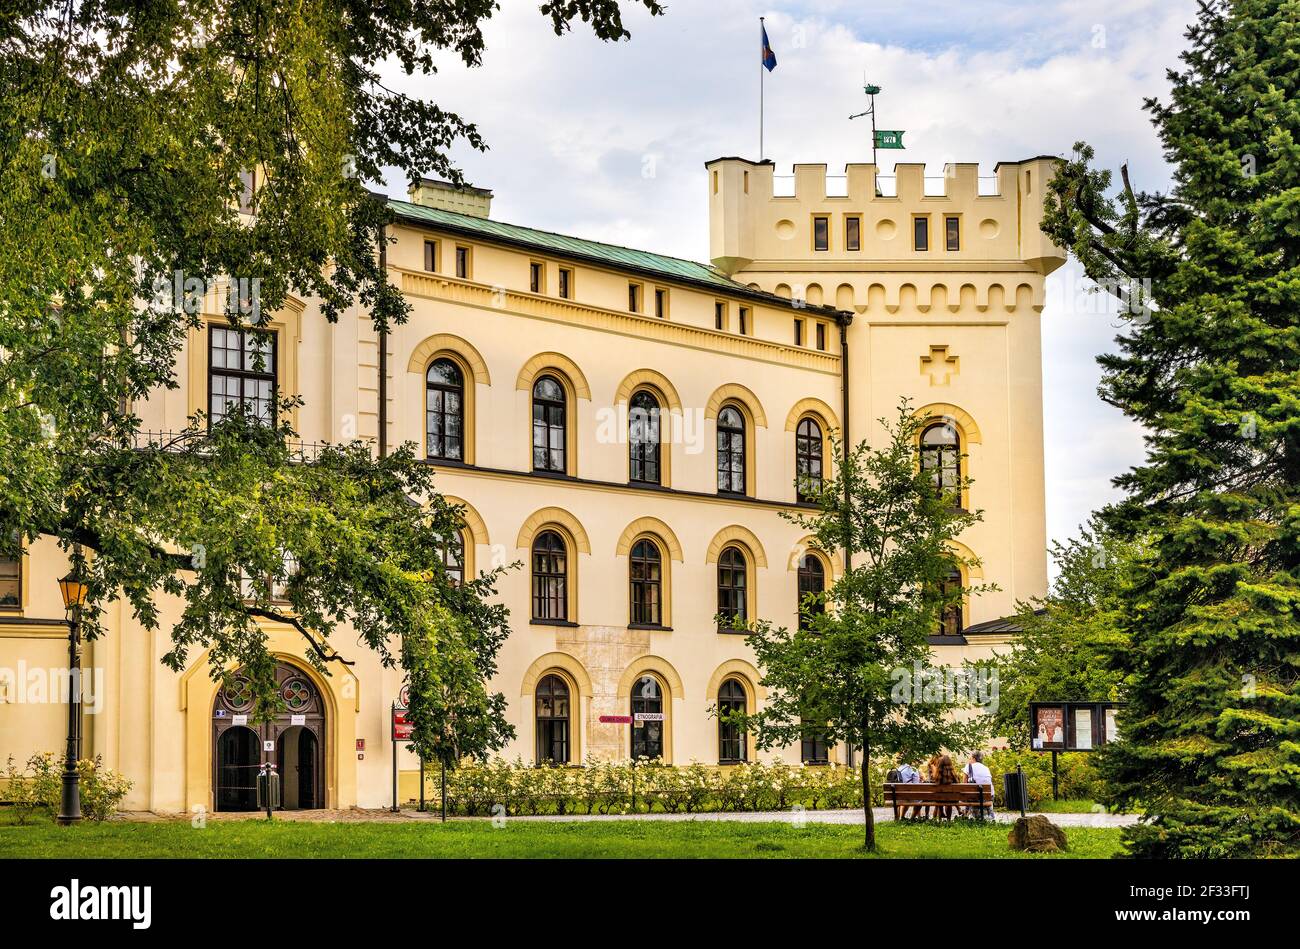 Zywiec, Polen - 30. August 2020: Zywiec Altes Schloss mit Hauptwachturm und südöstlicher façade Hauptfassade im historischen Park im Stadtzentrum der Altstadt Stockfoto